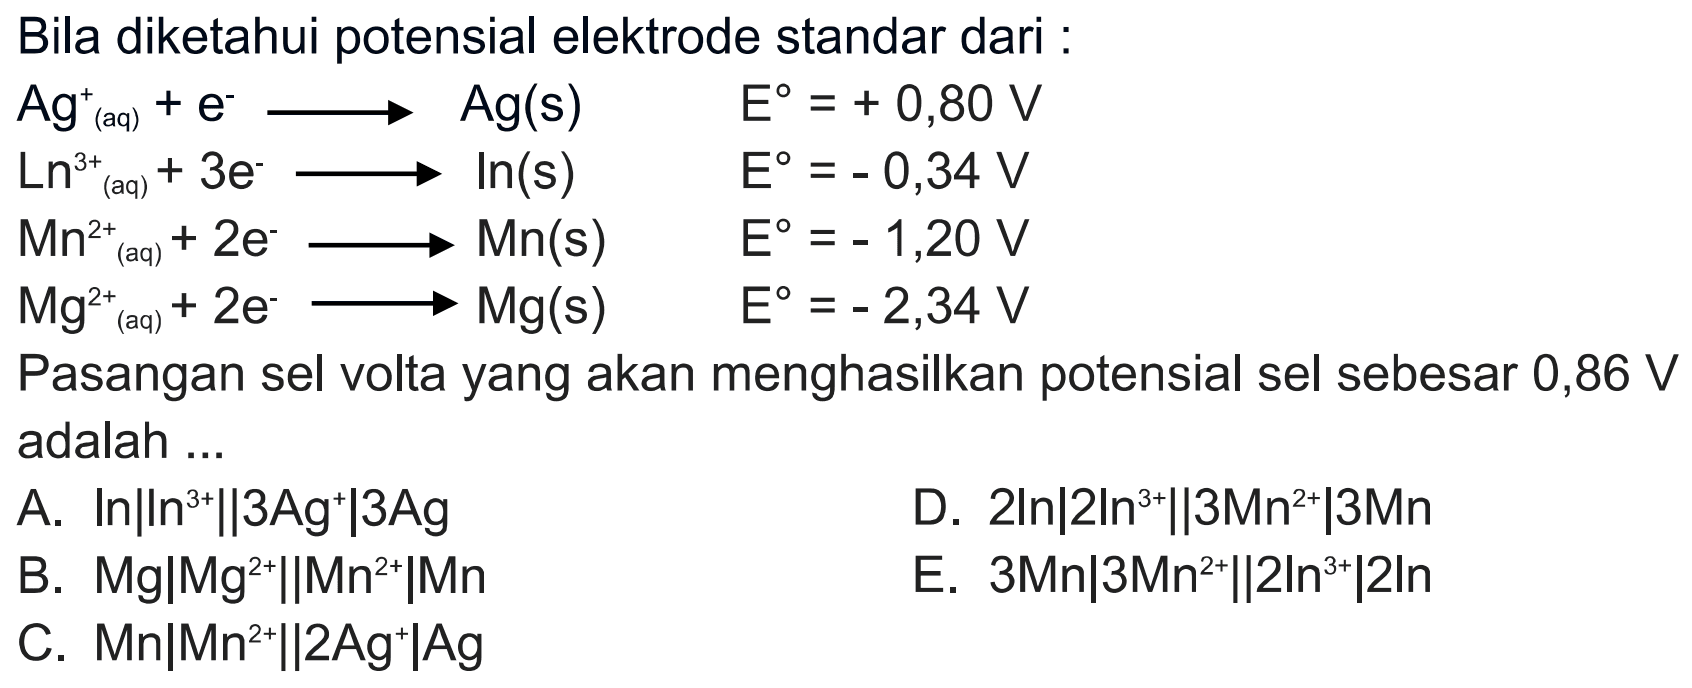 Bila diketahui potensial elektrode standar dari : Ag^+(aq) + e -> Ag(s) E^o = +0,80 V Ln^(3+)(aq) + 3e -> Ln(s) E^o = -0,34 V Mn^(2+)(aq) + 2e -> Mn(s) E^o = -1,20 V  Mg^(2+)(aq) + 2e -> Mg(s) E^o = -2,34 V Pasangan sel volta yang akan menghasilkan potensial sel sebesar 0,86 V adalah ... 